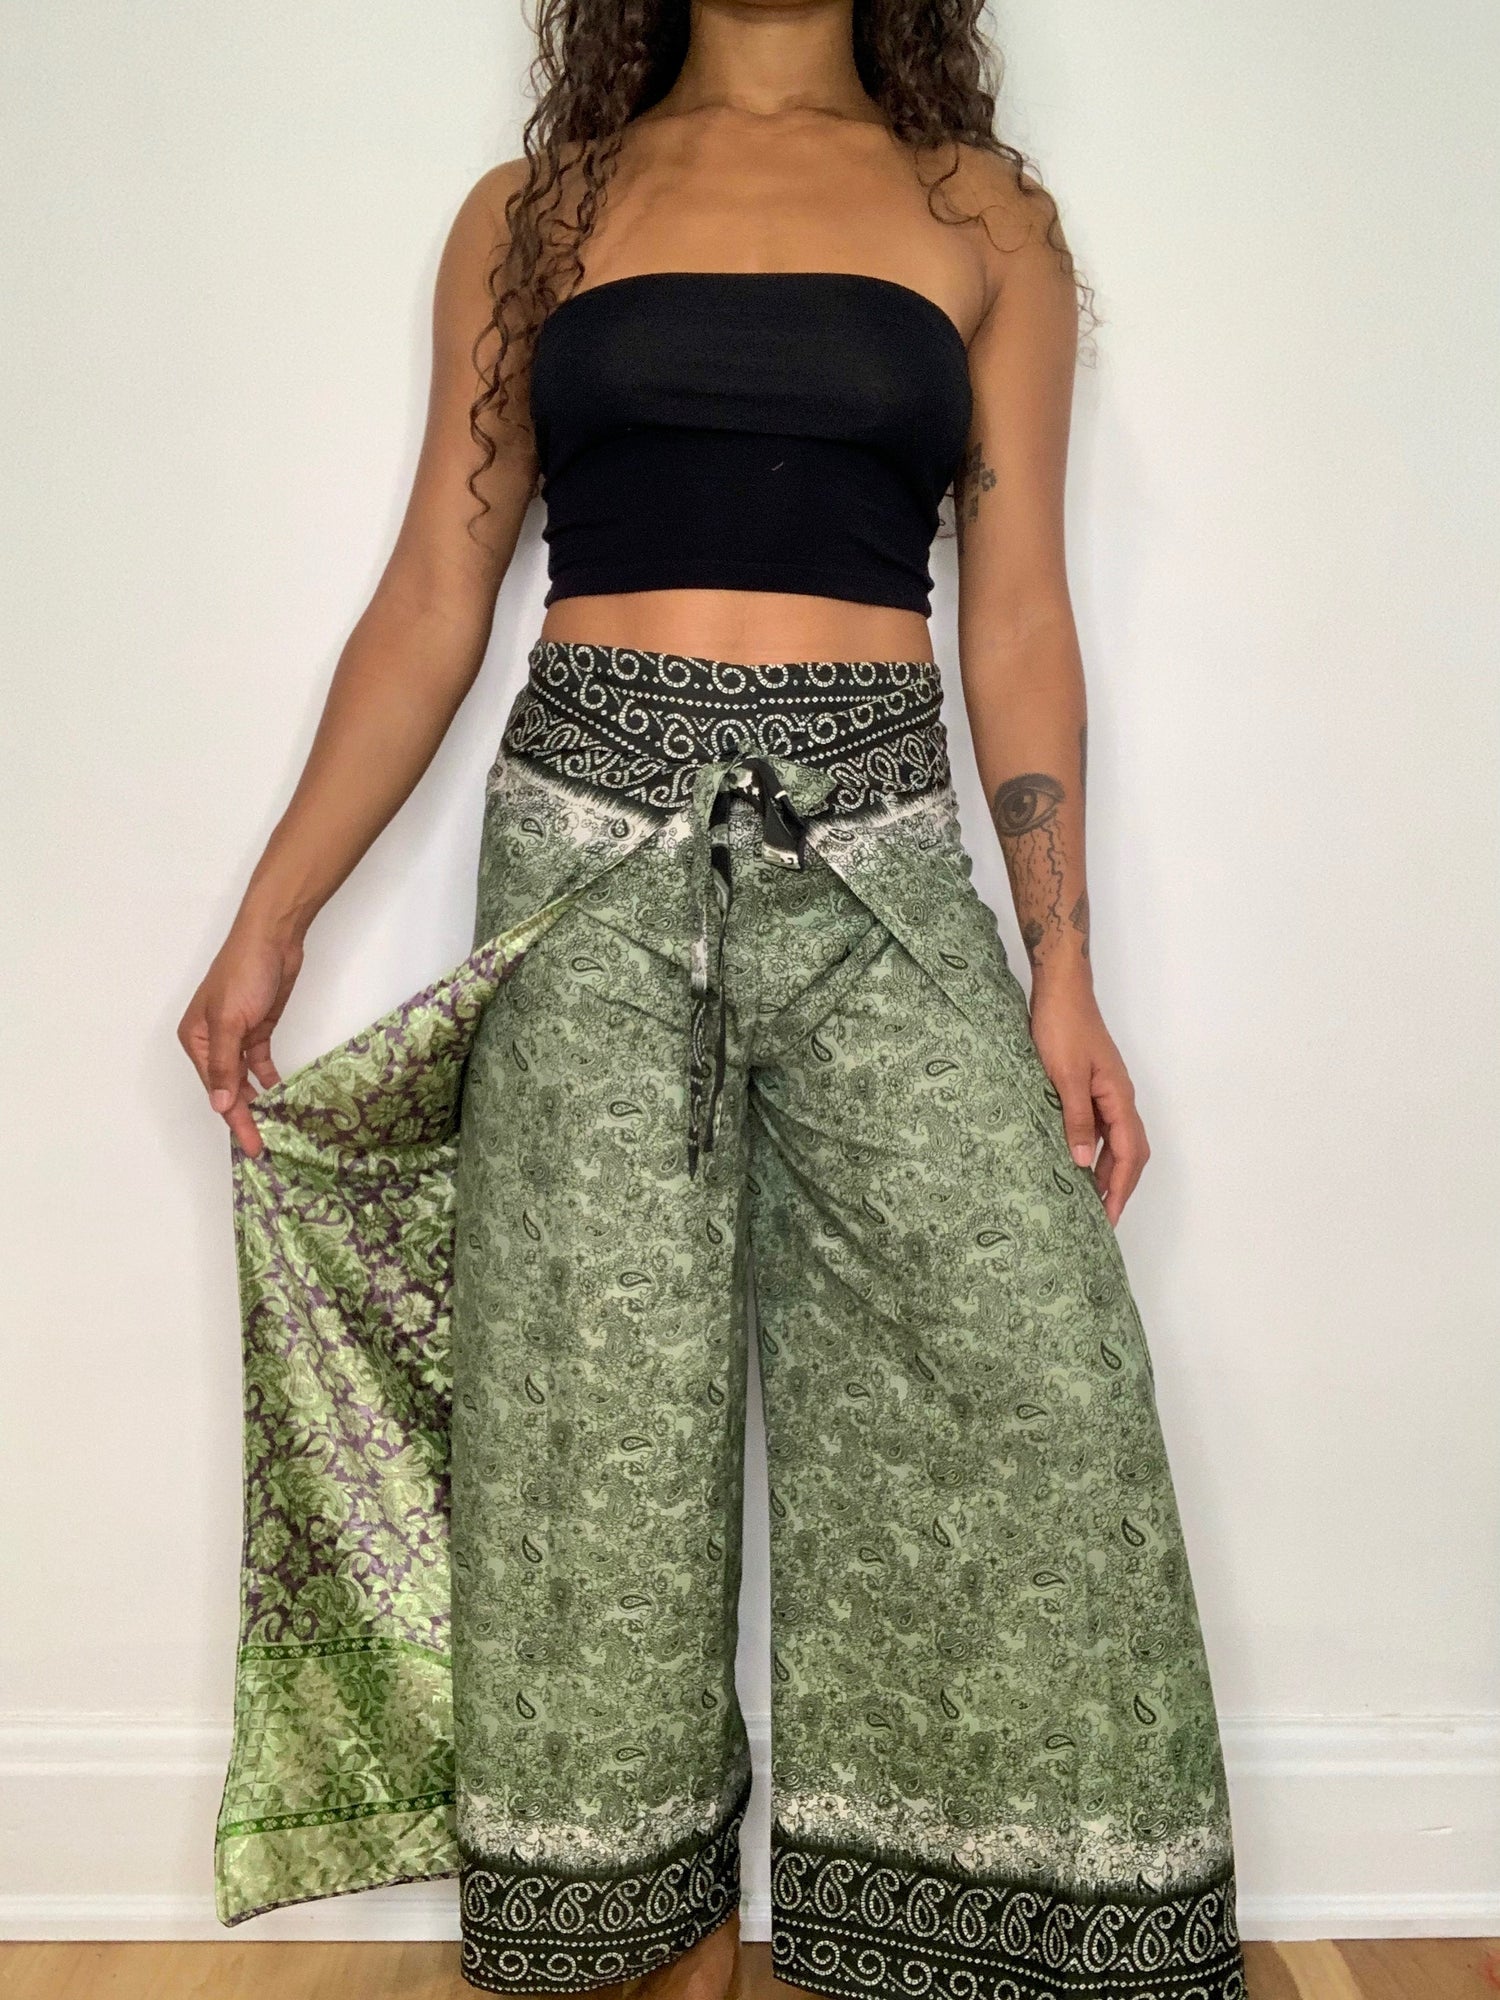 https://shopsol.ca/cdn/shop/products/Hippie.Bohemian.Green.White.Reversible.Silk.Wrap.Pants.Shopsol_1500x.jpg?v=1618695309